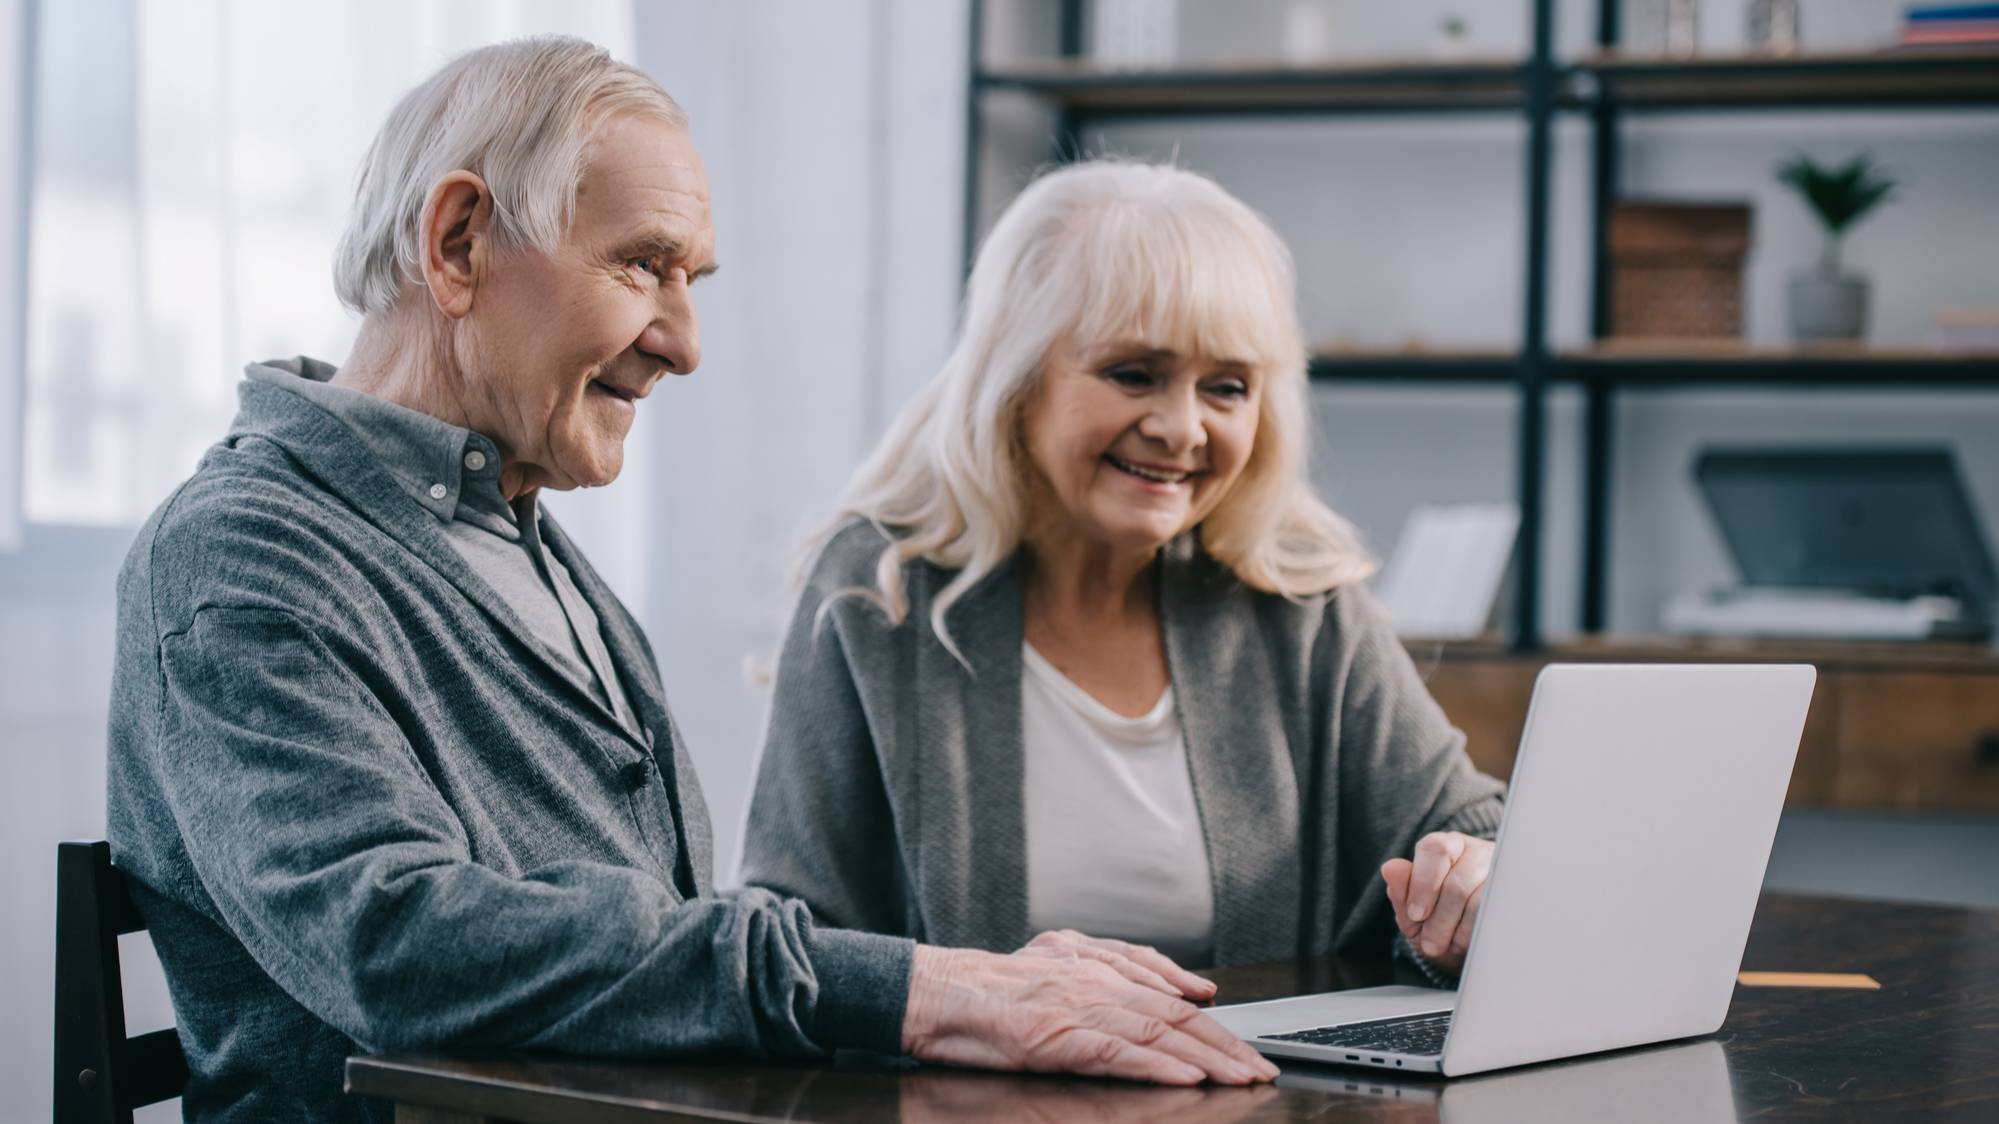 Пожилые пары могут получить прибавку к пенсии. Сколько она составит